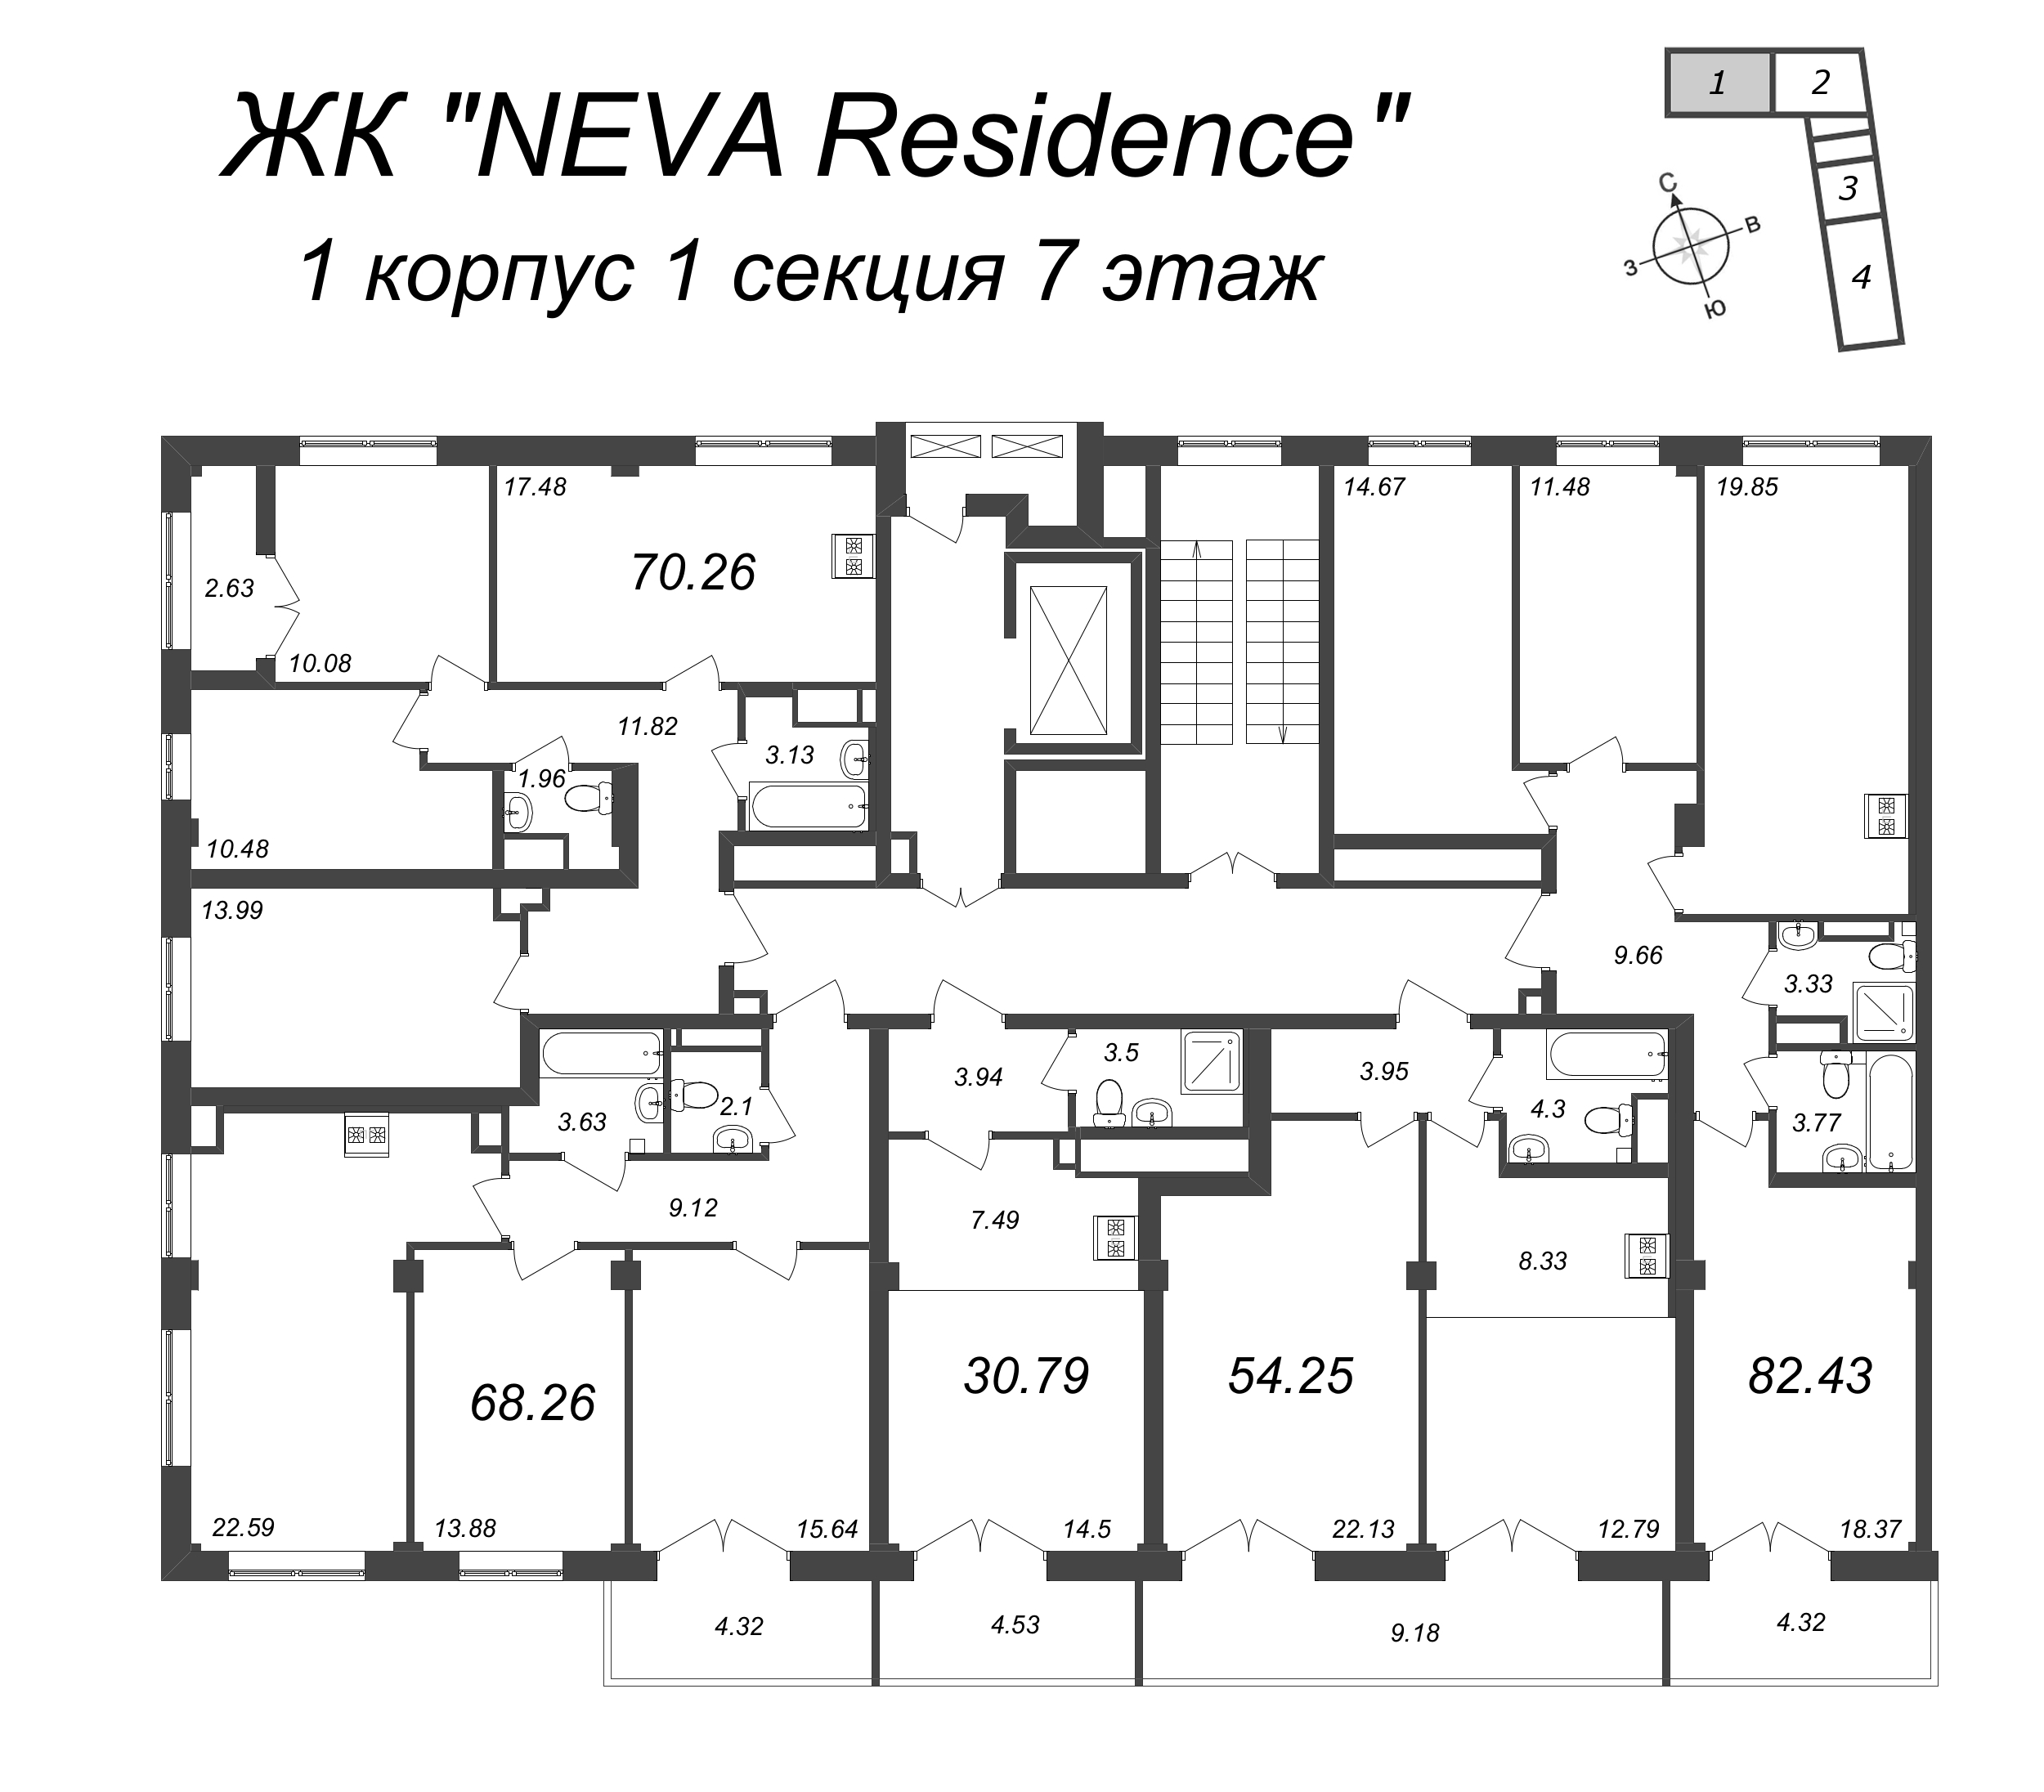 Квартира-студия, 30.79 м² в ЖК "Neva Residence" - планировка этажа